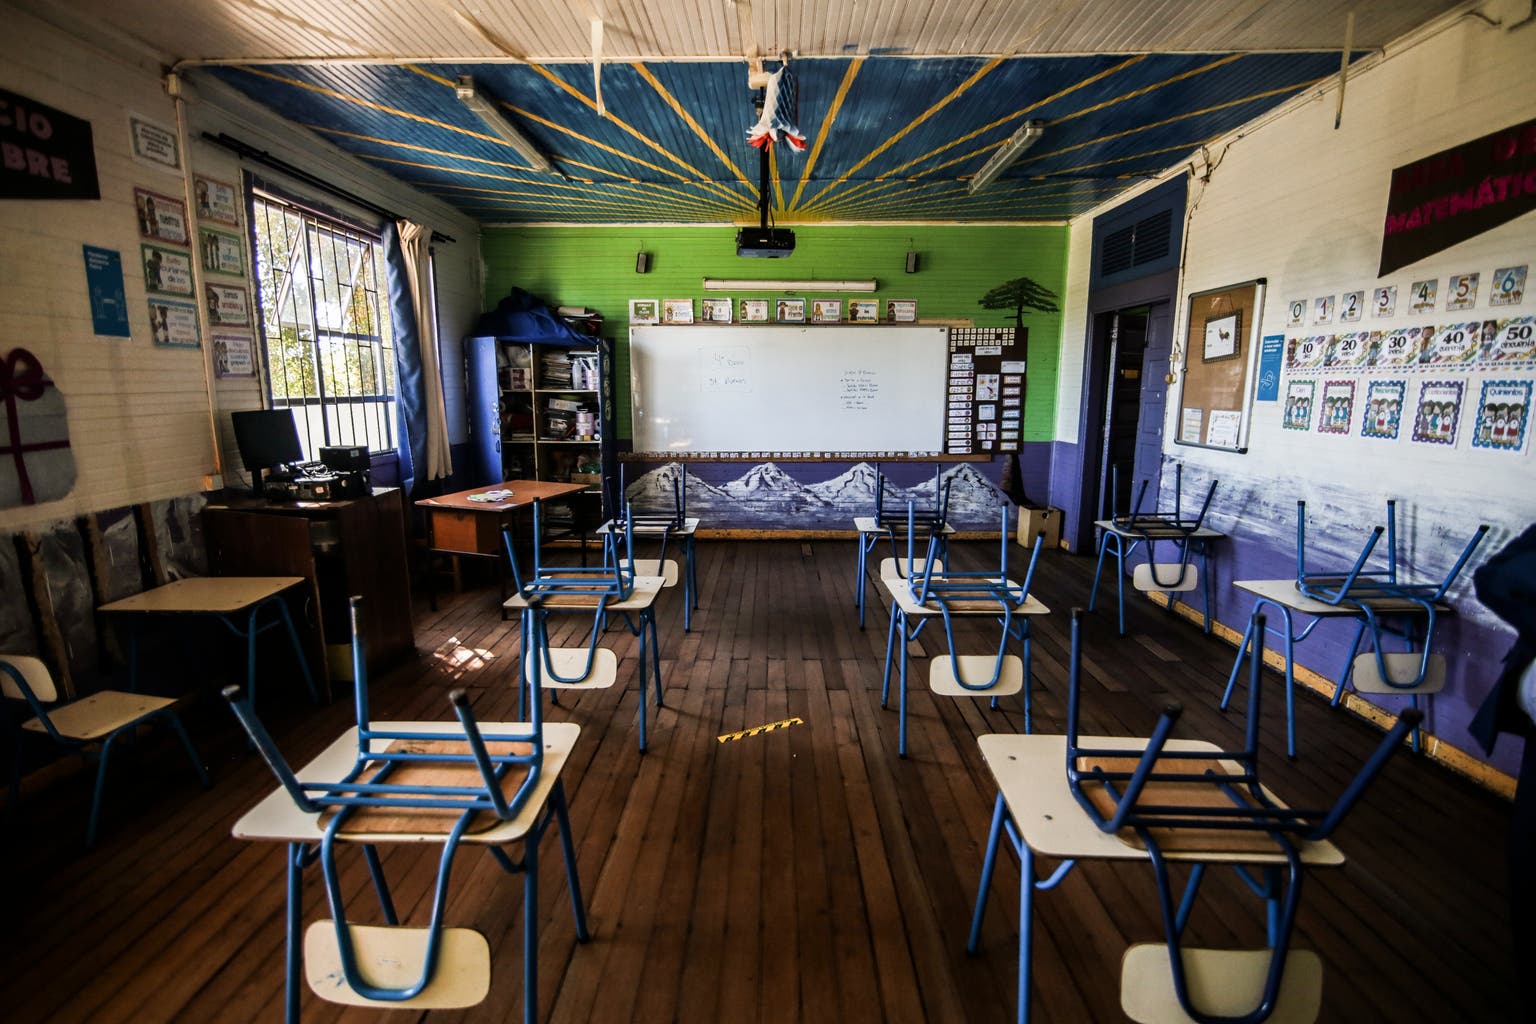 Chile_covid_empty_classroom